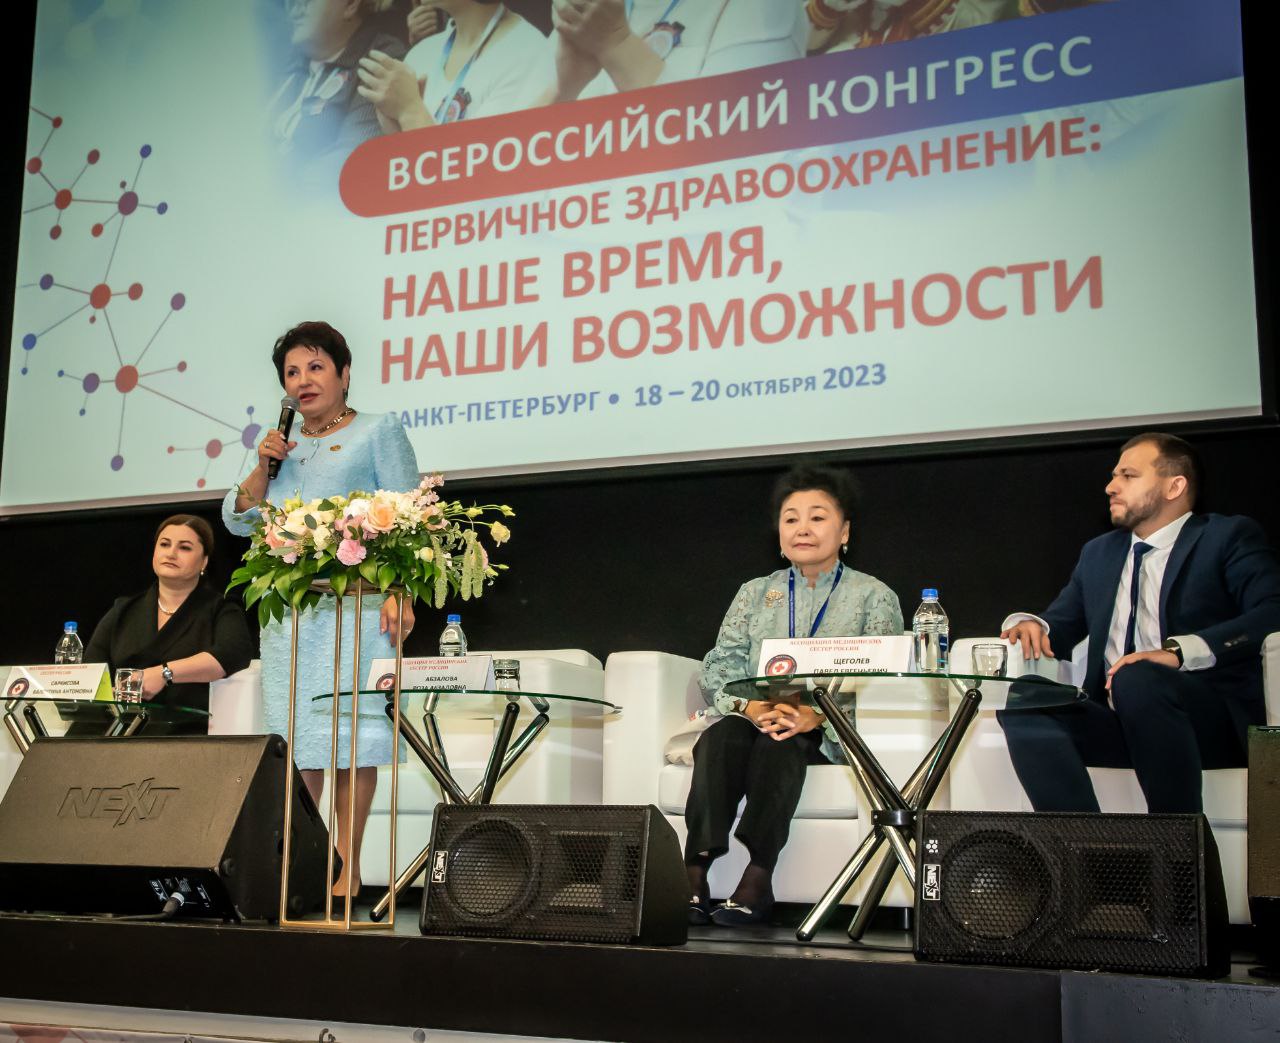 Всероссийский конгресс «Первичное здравоохранение: Наше время. Наши возможности»